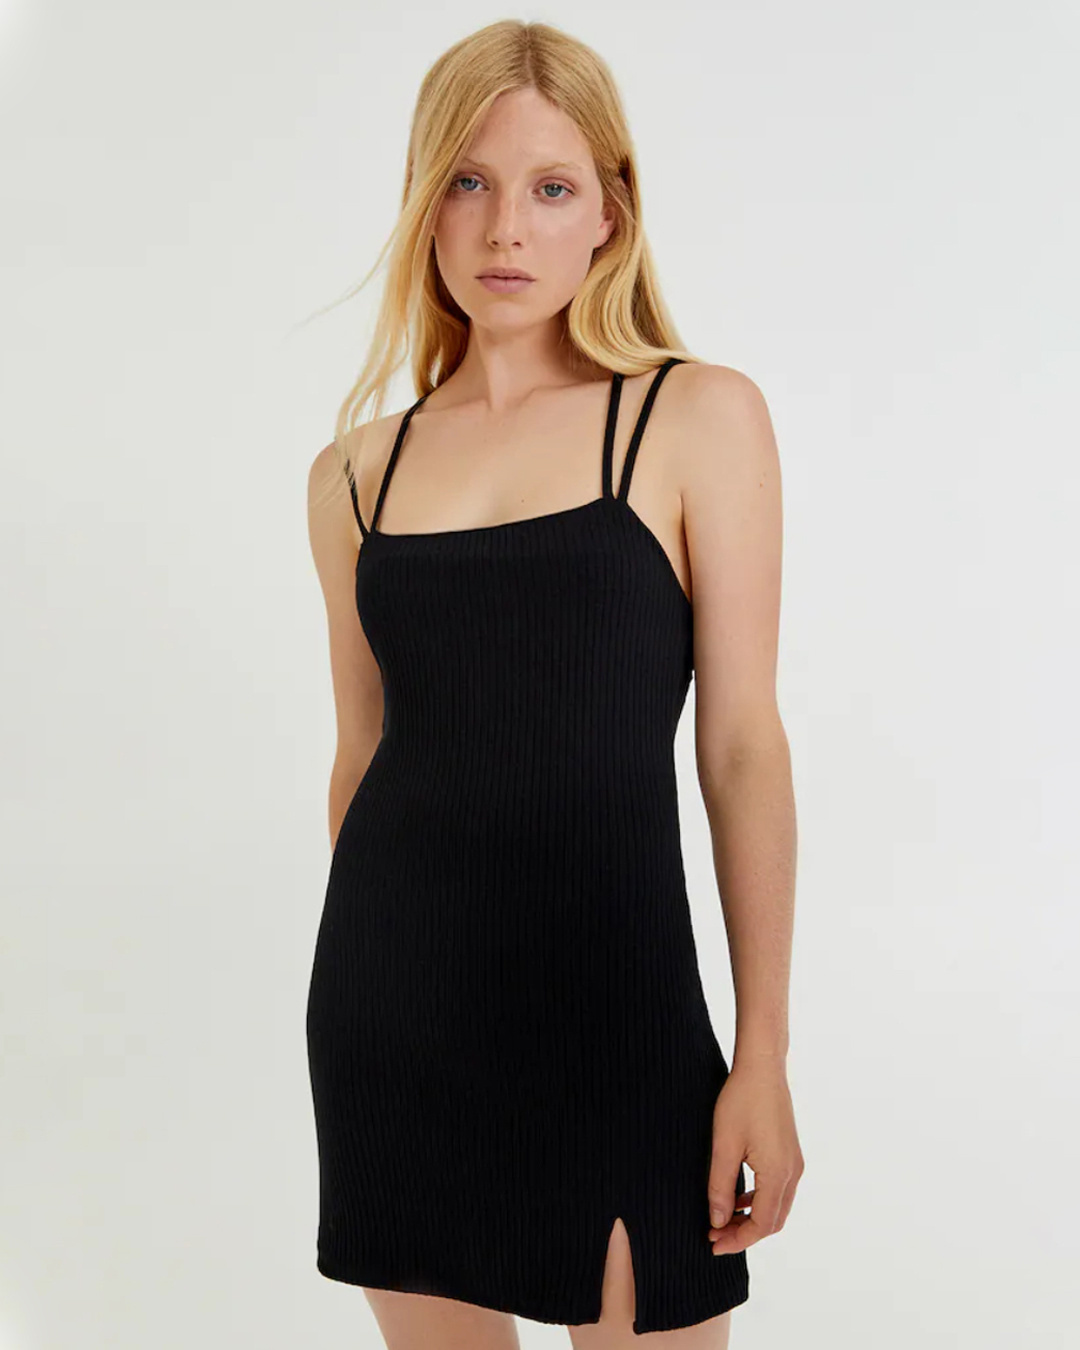 Buy MWB Side slit Little Black Dress for Women Black Online at Bewakoof